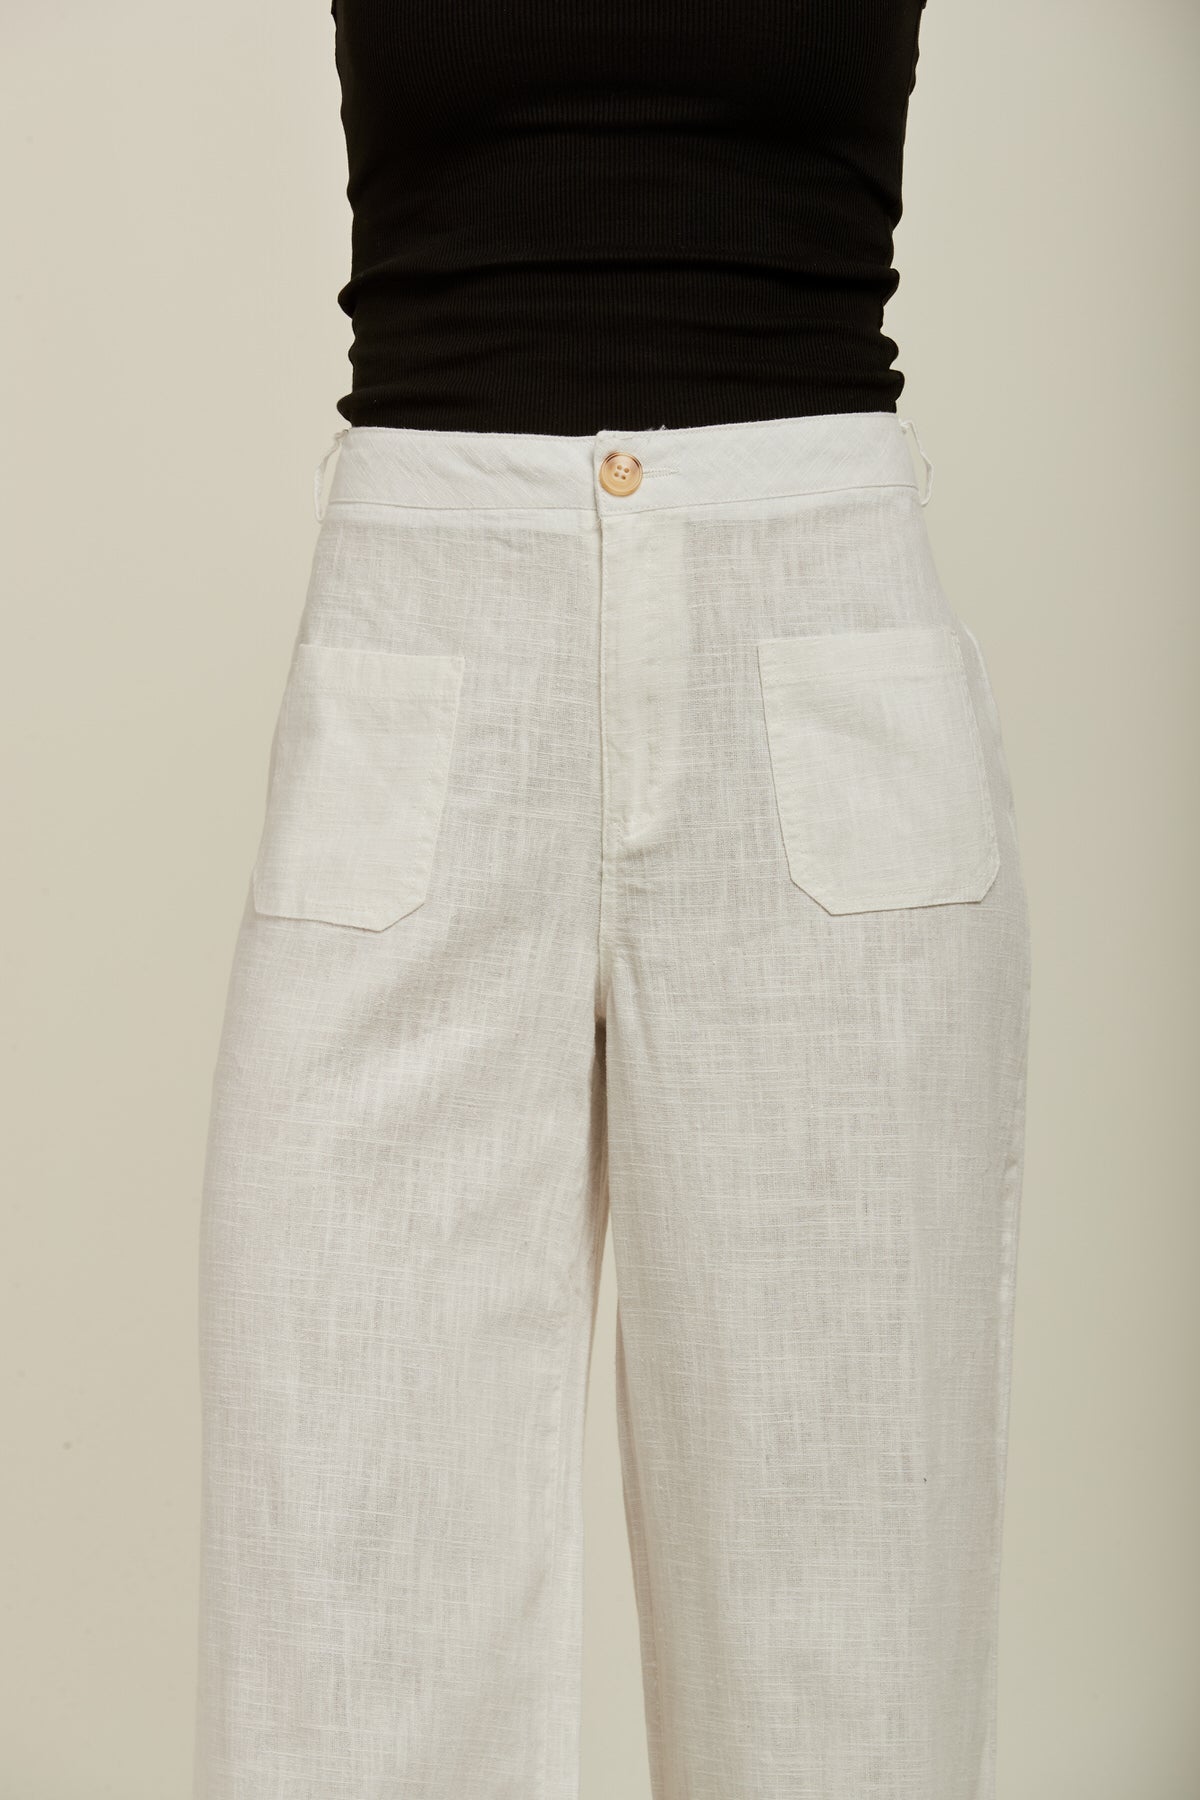 Pantalon lin large - Colette - TOXIK3